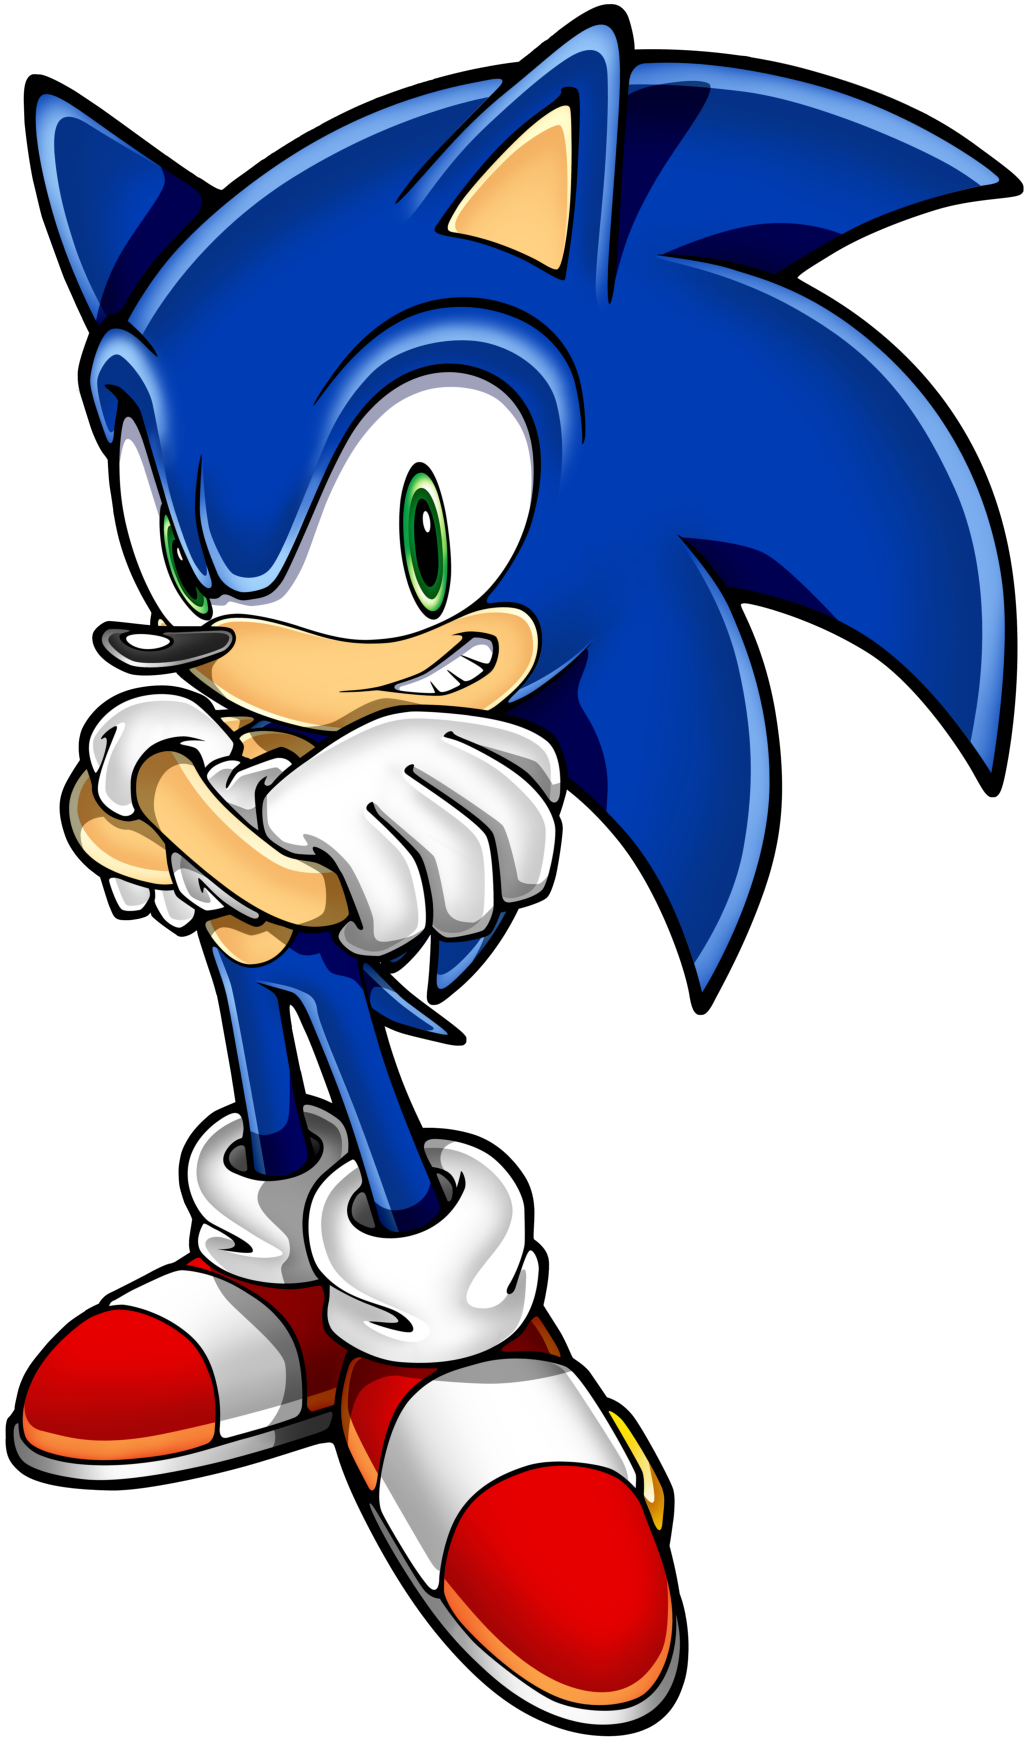 Sonic In Versione Sonic Boom Ancora Piu Bello Di Amy Xd Sonic Version Sonic Boom Even More Beautiful Than Amy Xd Sonic Boom Sonic The Hedgehog Sonic